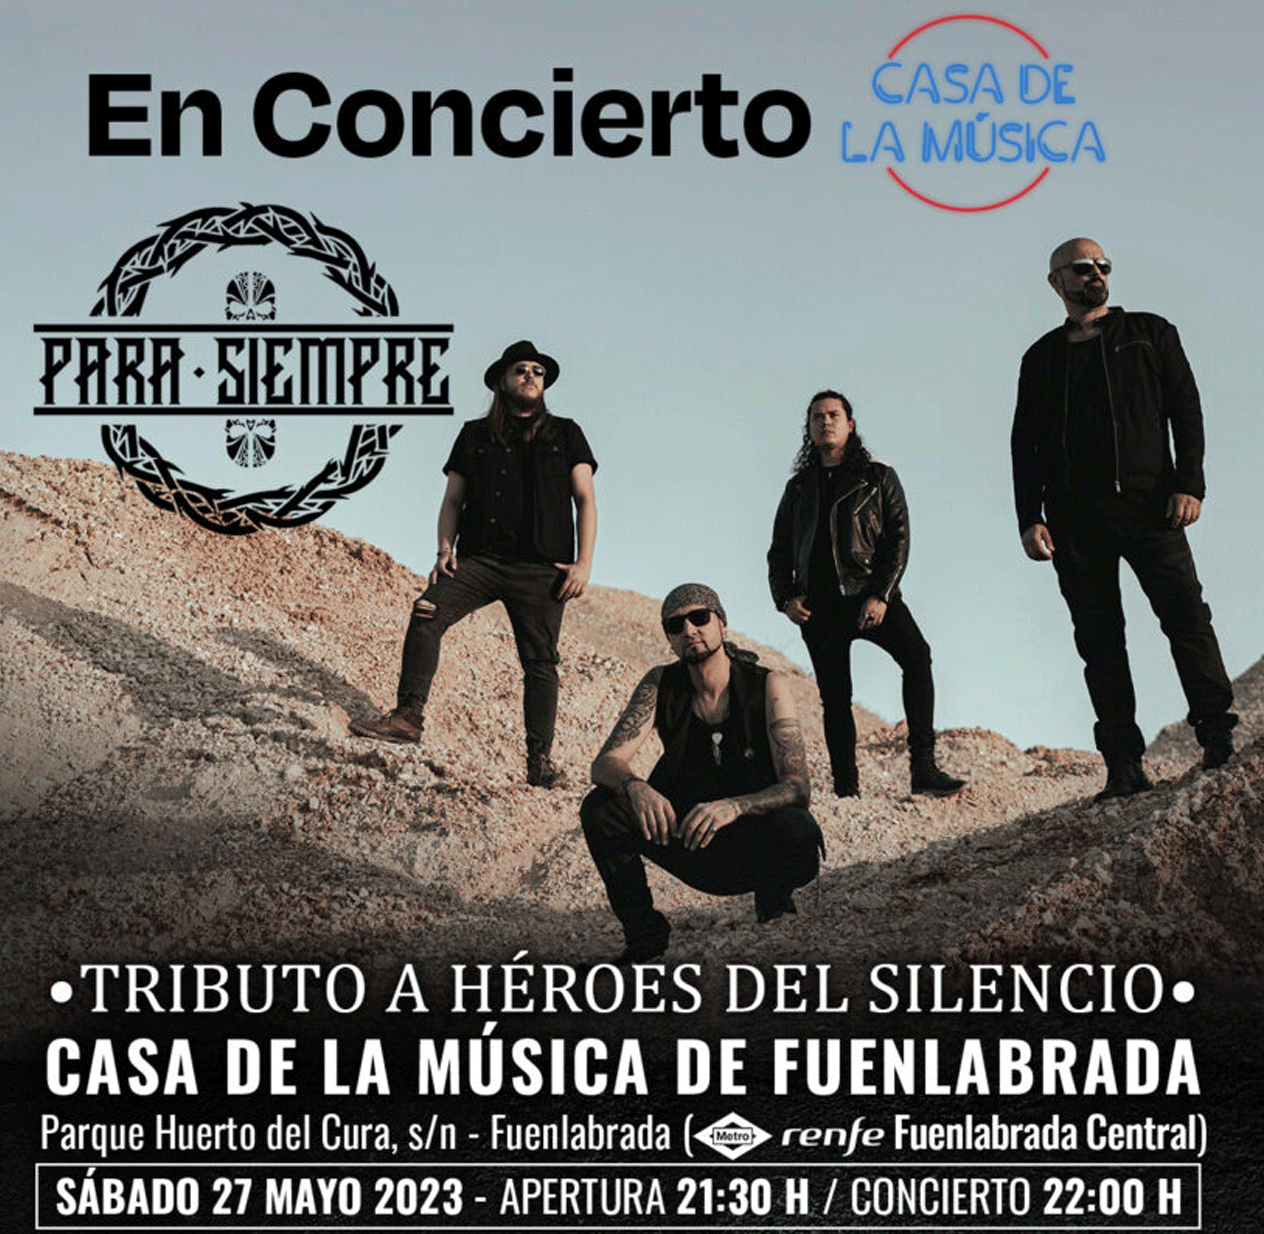 Cartel de la actuación del Tributo a Héroes del Silencio a cargo de la banda 'Para siempre'